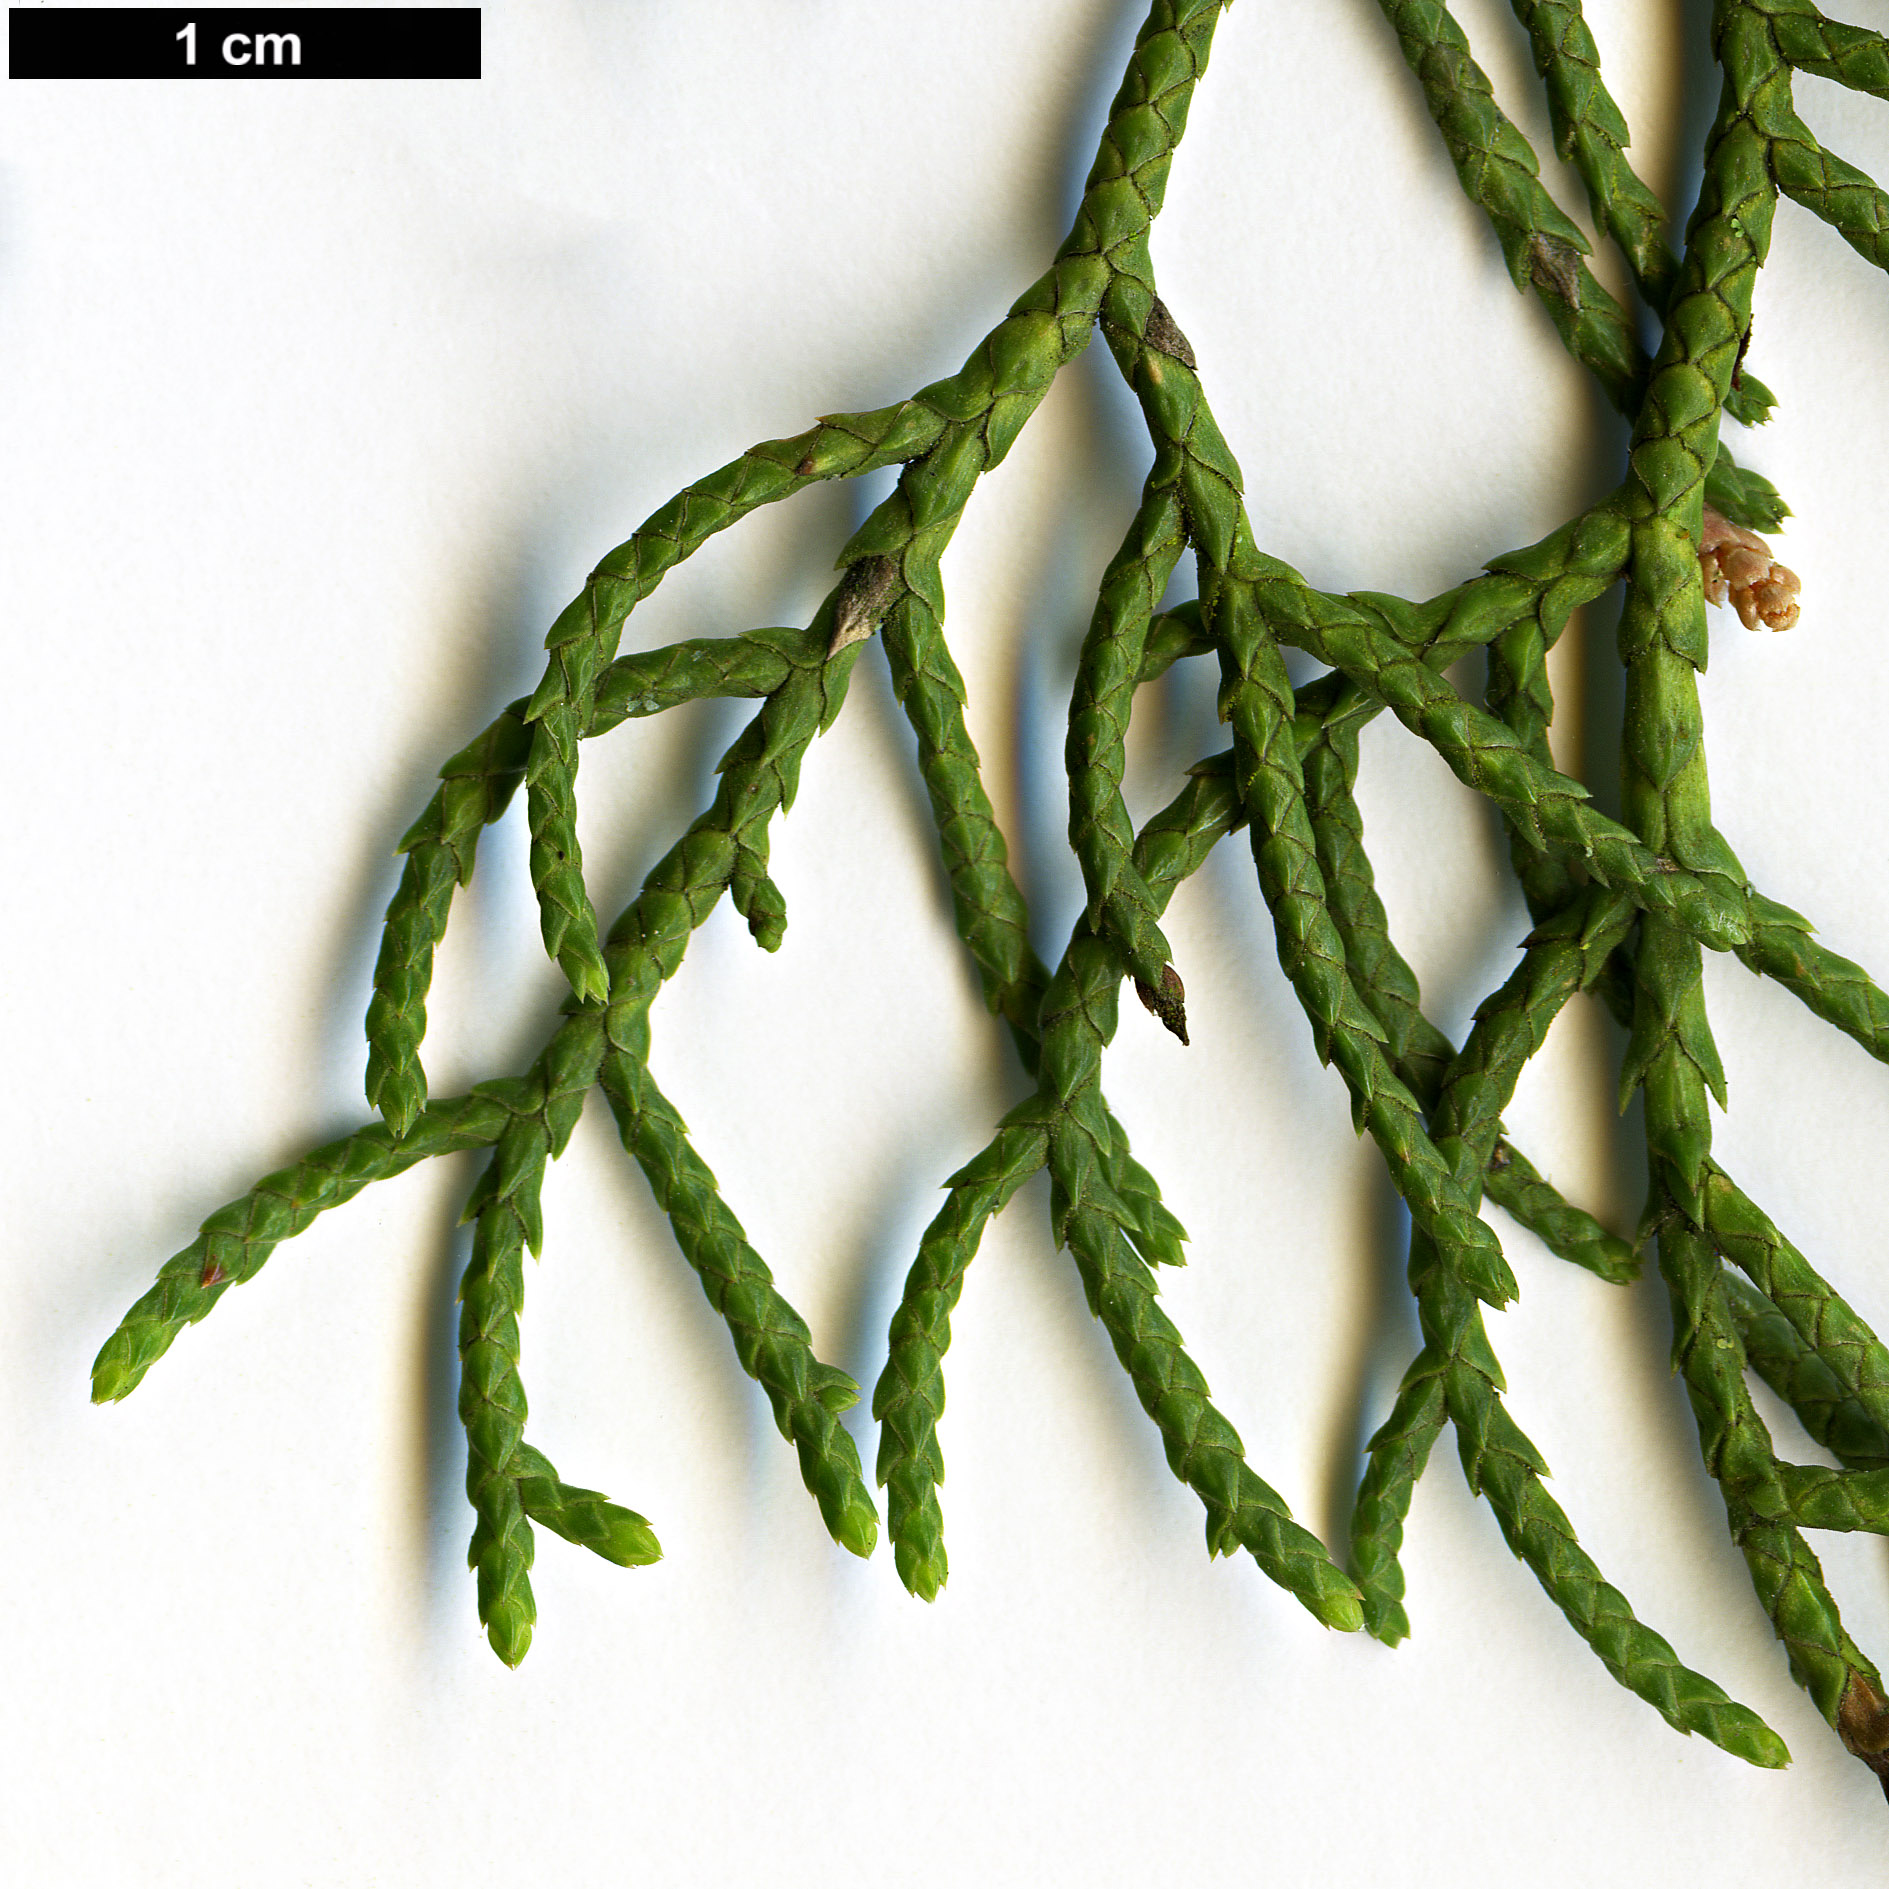 High resolution image: Family: Cupressaceae - Genus: Cupressus - Taxon: gigantea